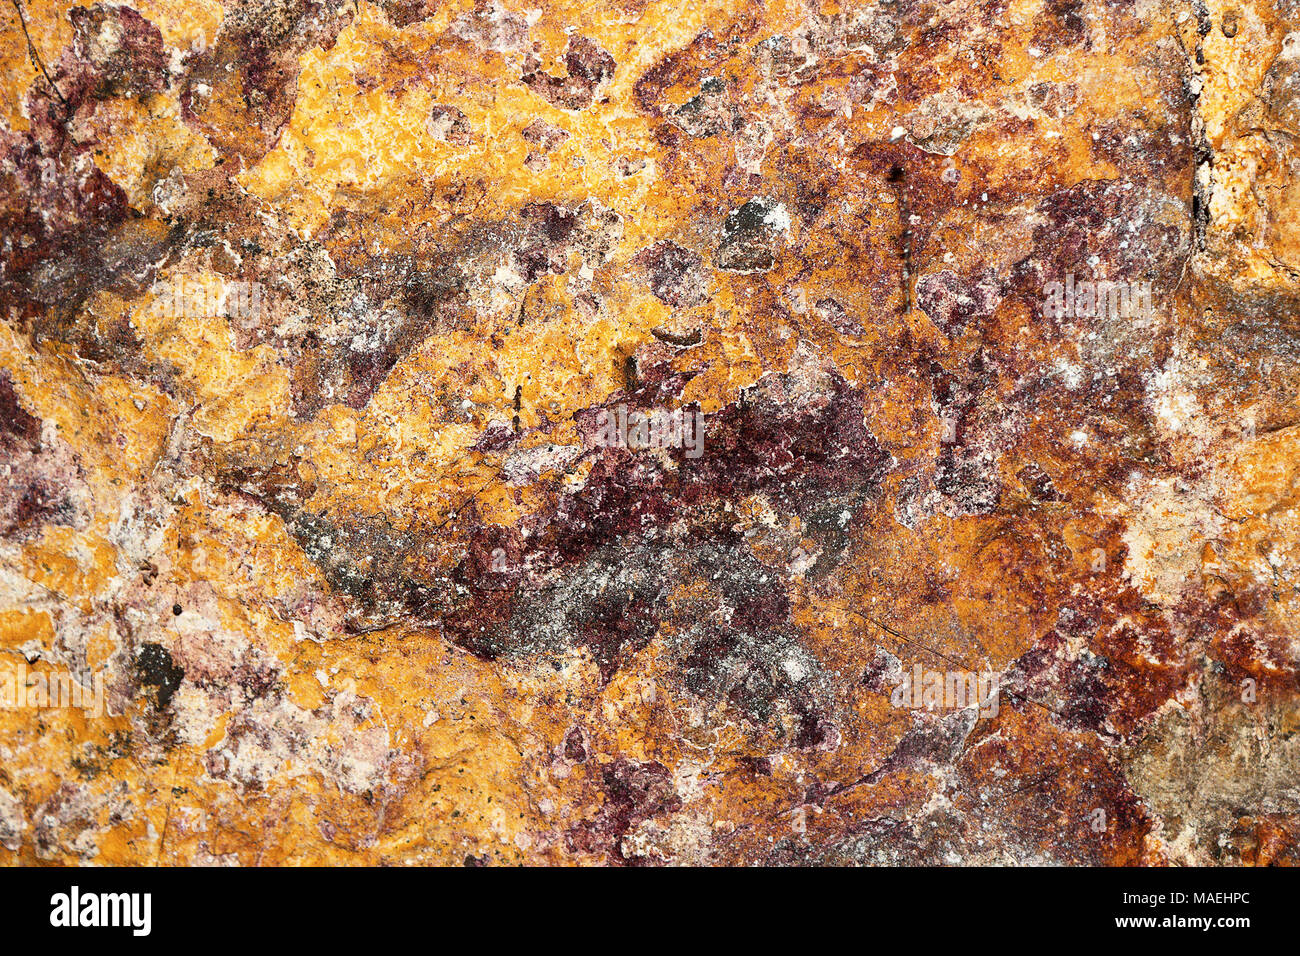 Colorido textura del antiguo muro de piedra basal; este patrón se hizo bt collonies de hongos, bacterias y moho Foto de stock